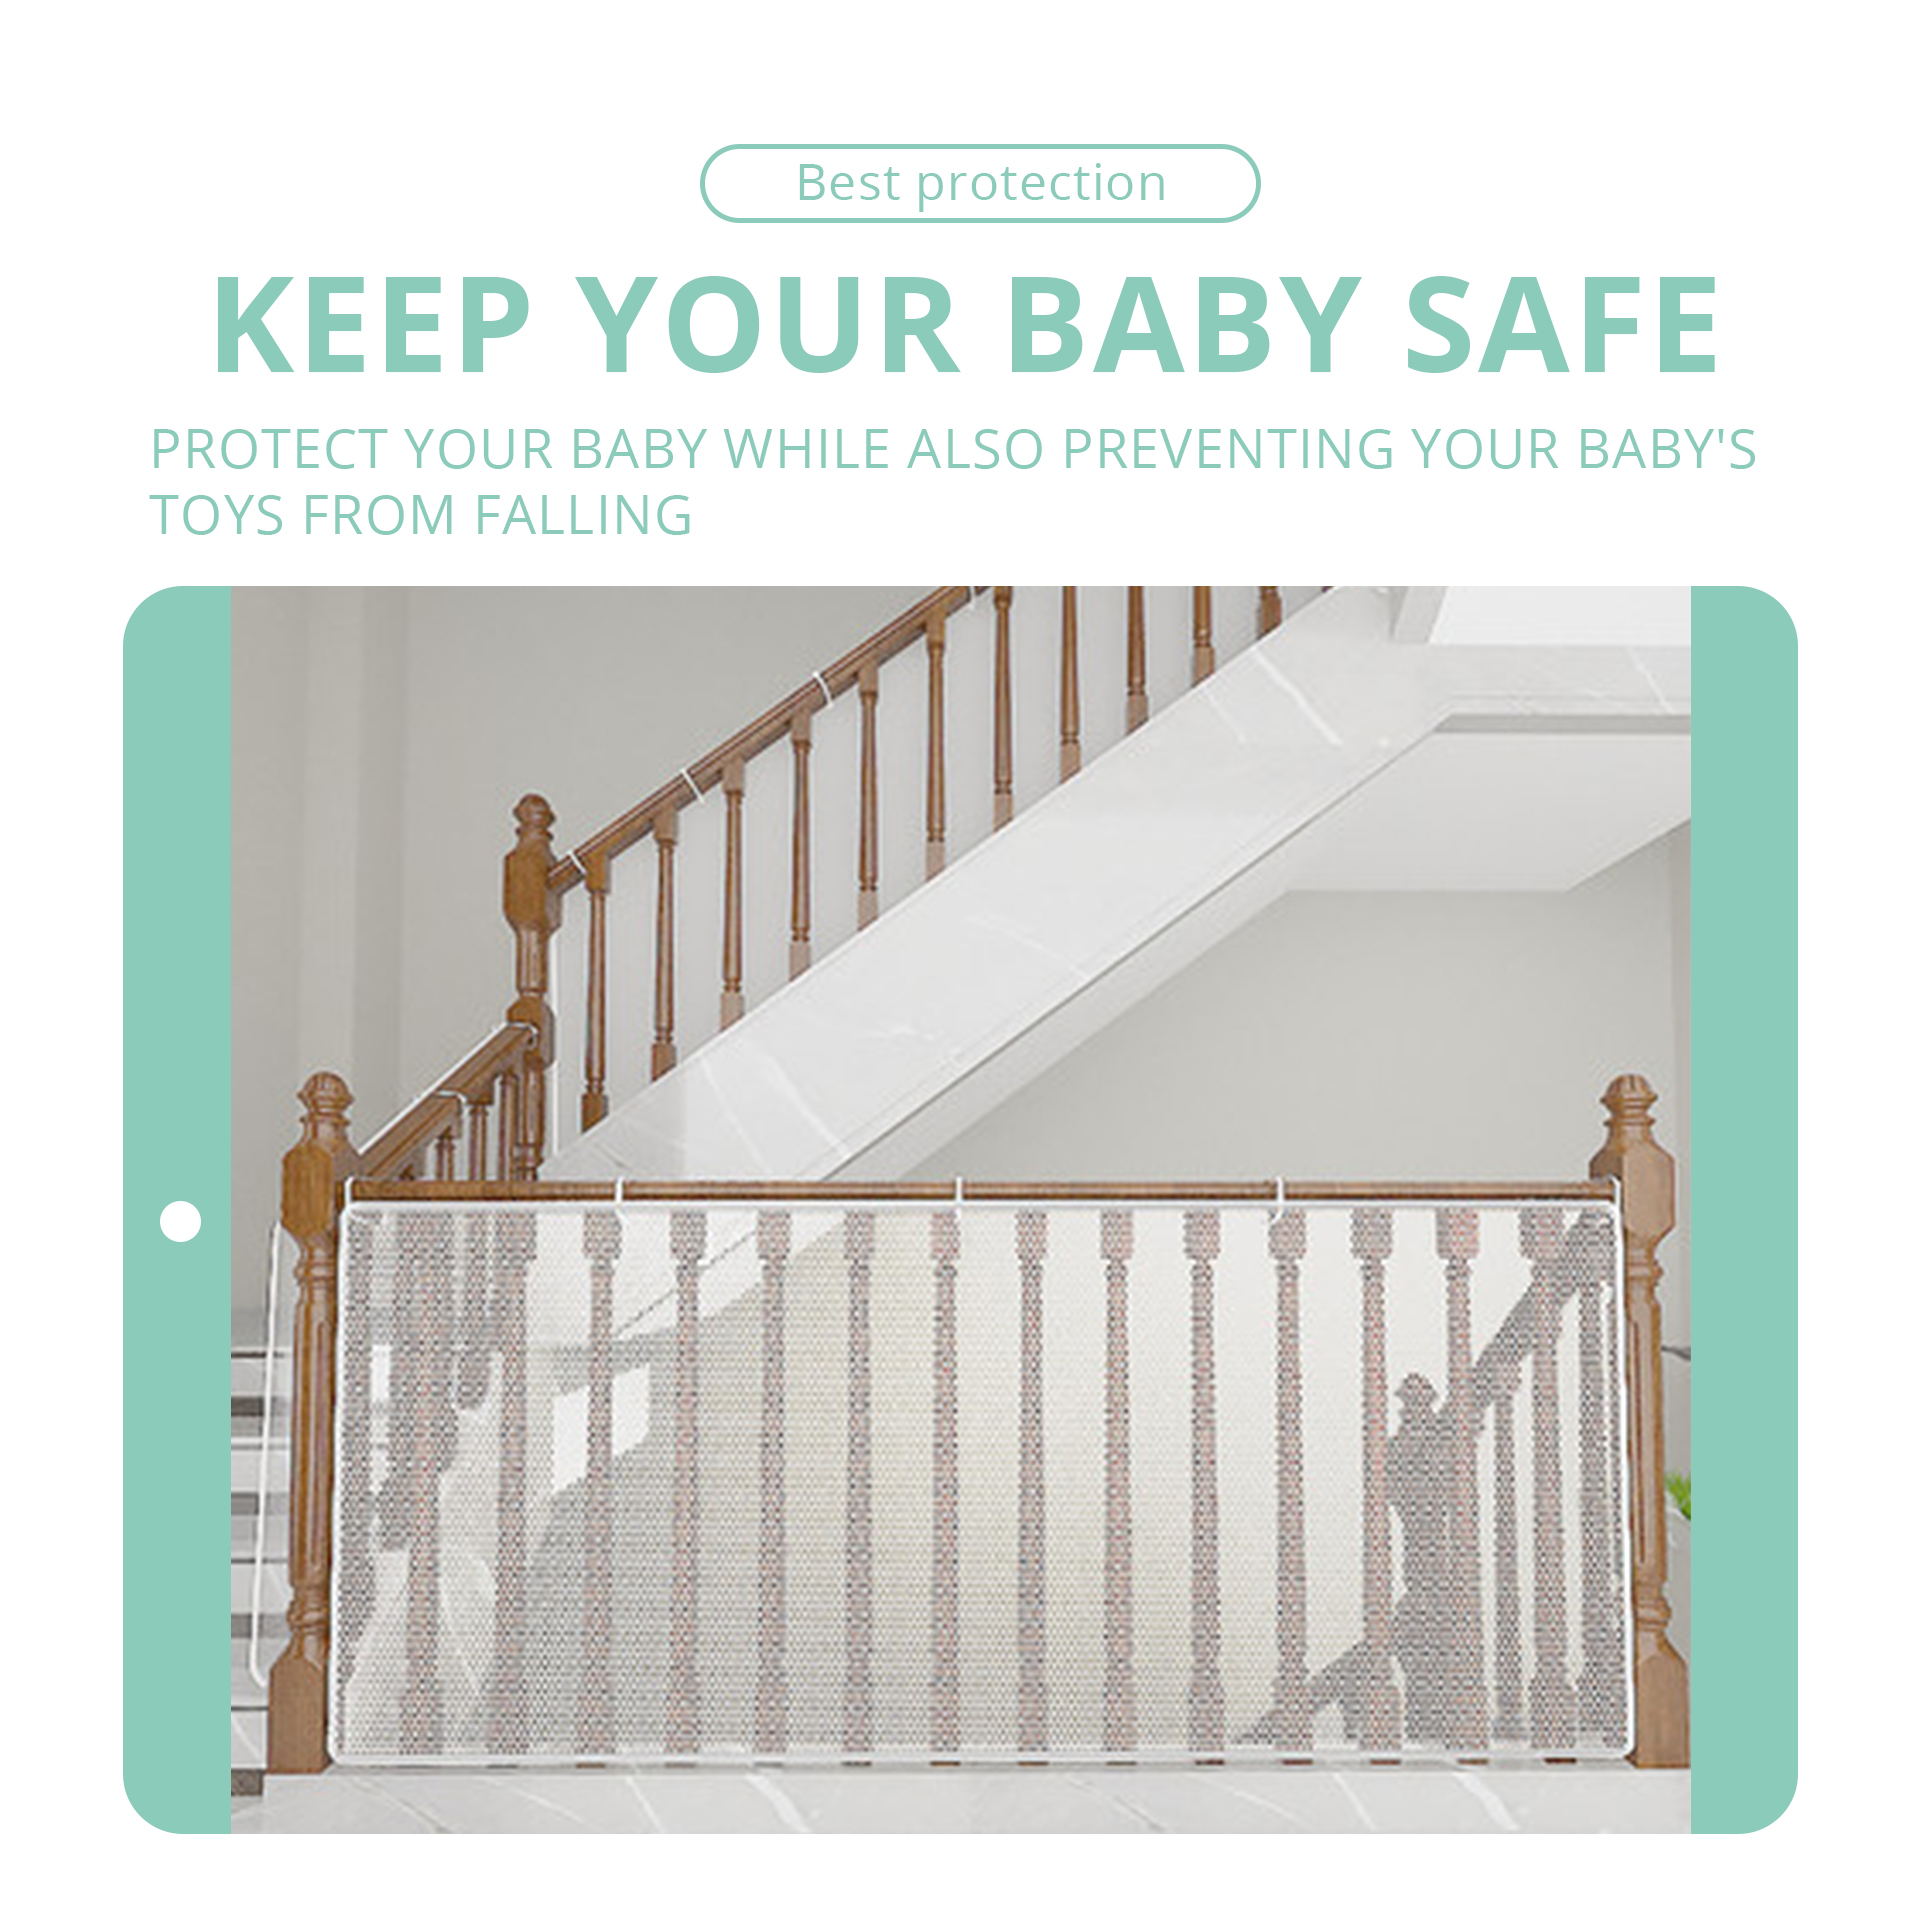 Schutzabdeckung für Babytreppen, um festsitzende Gliedmaßen zu verhindern, das Herunterfallen von Spielzeug zu verhindern, Balkonschutzhandlauf, Schutztreppendez